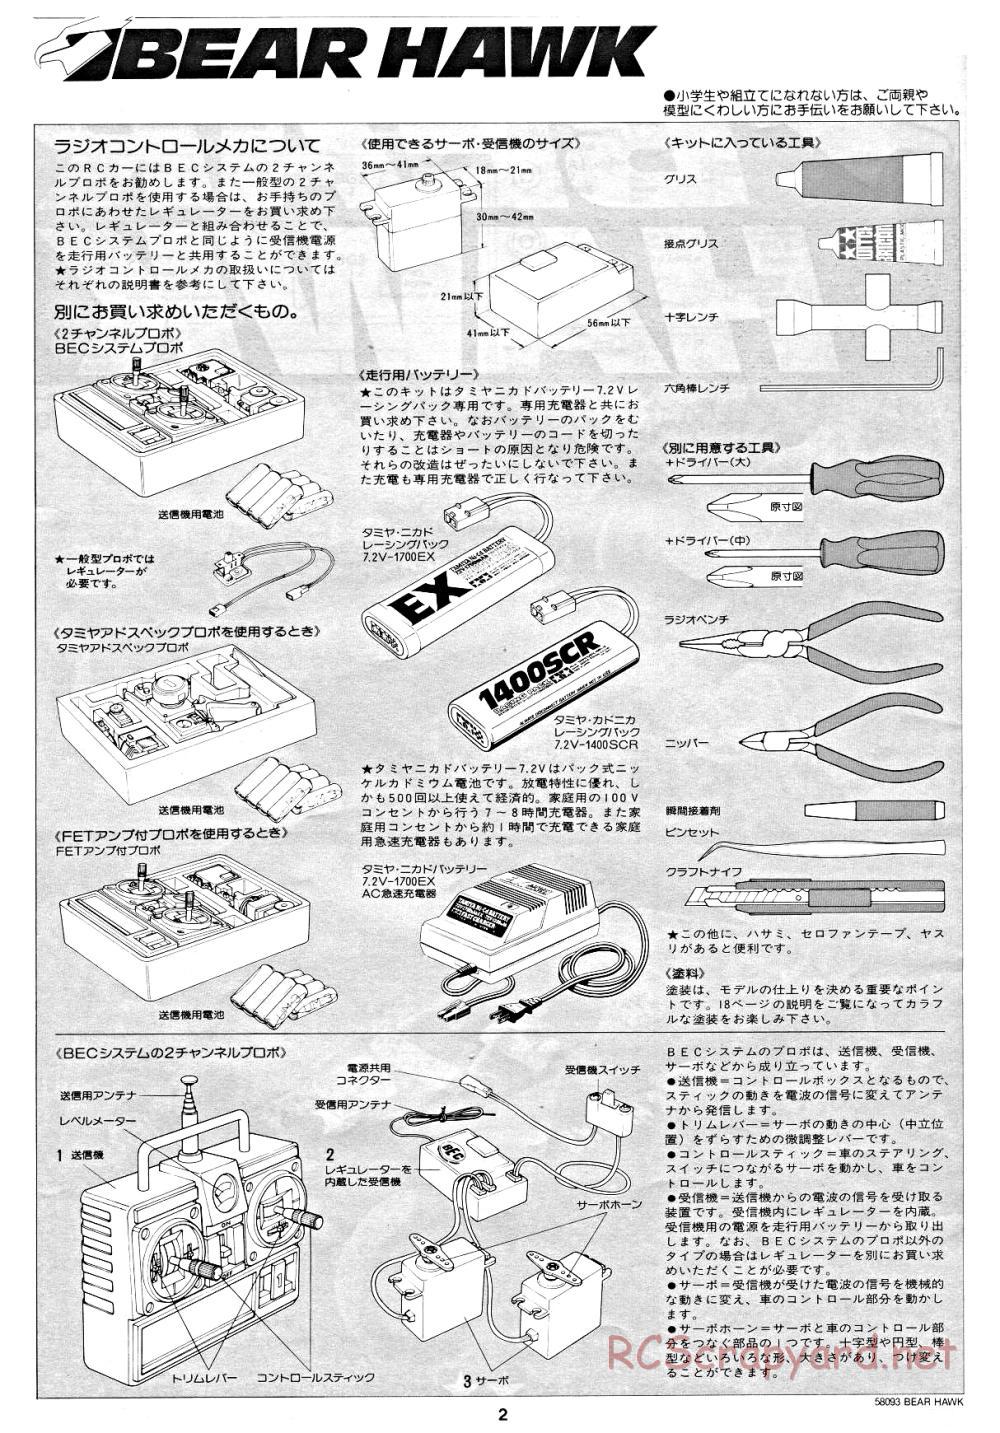 Tamiya - Bear Hawk - 58093 - Manual - Page 2